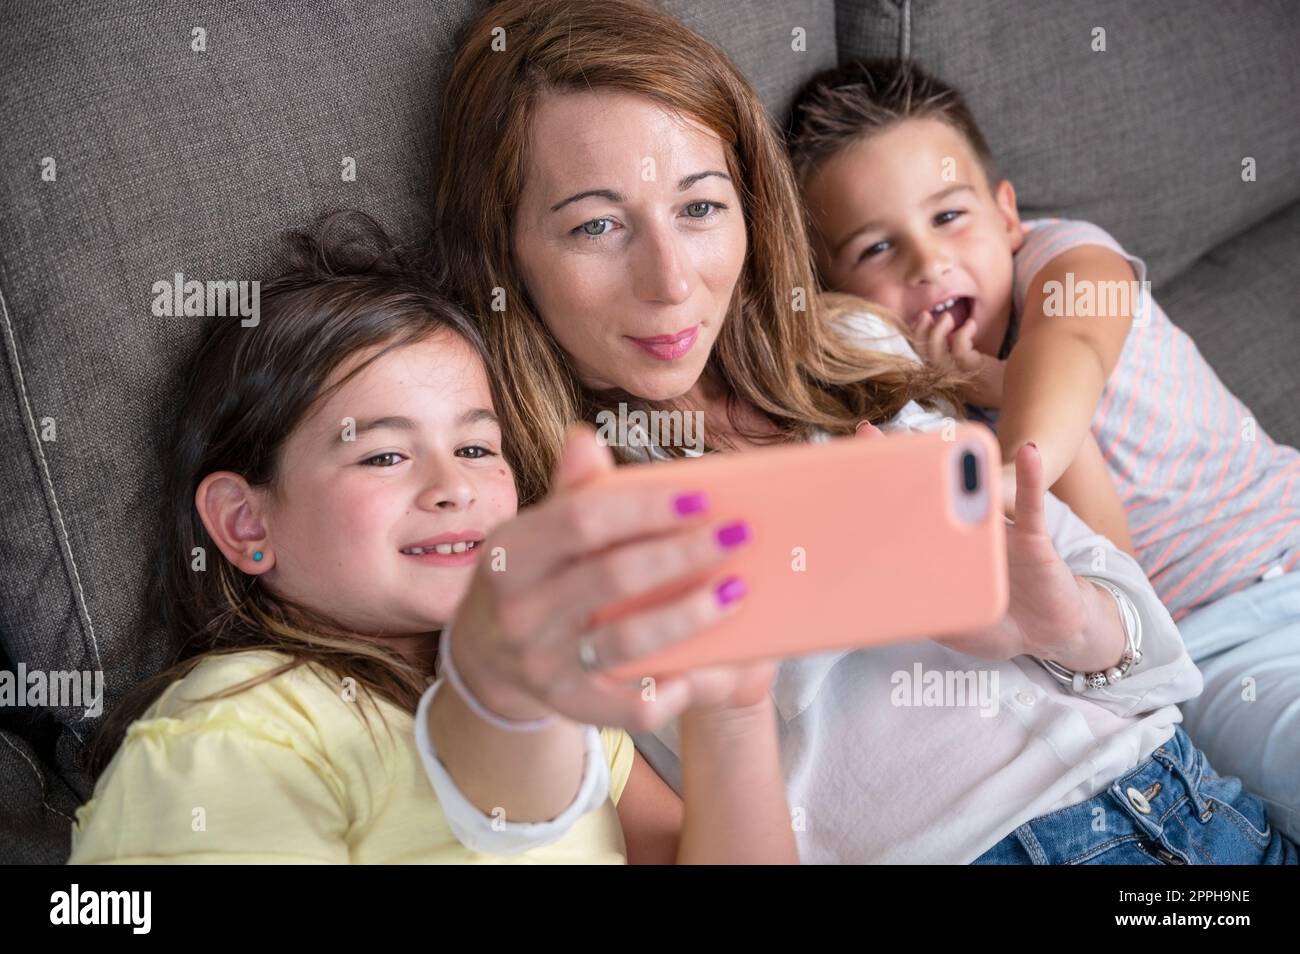 Mère heureuse avec ses enfants font un selfie ou un appel vidéo au père ou à des parents dans un canapé. Concept de technologie, nouvelle génération, famille, connexion, parentalité. Banque D'Images